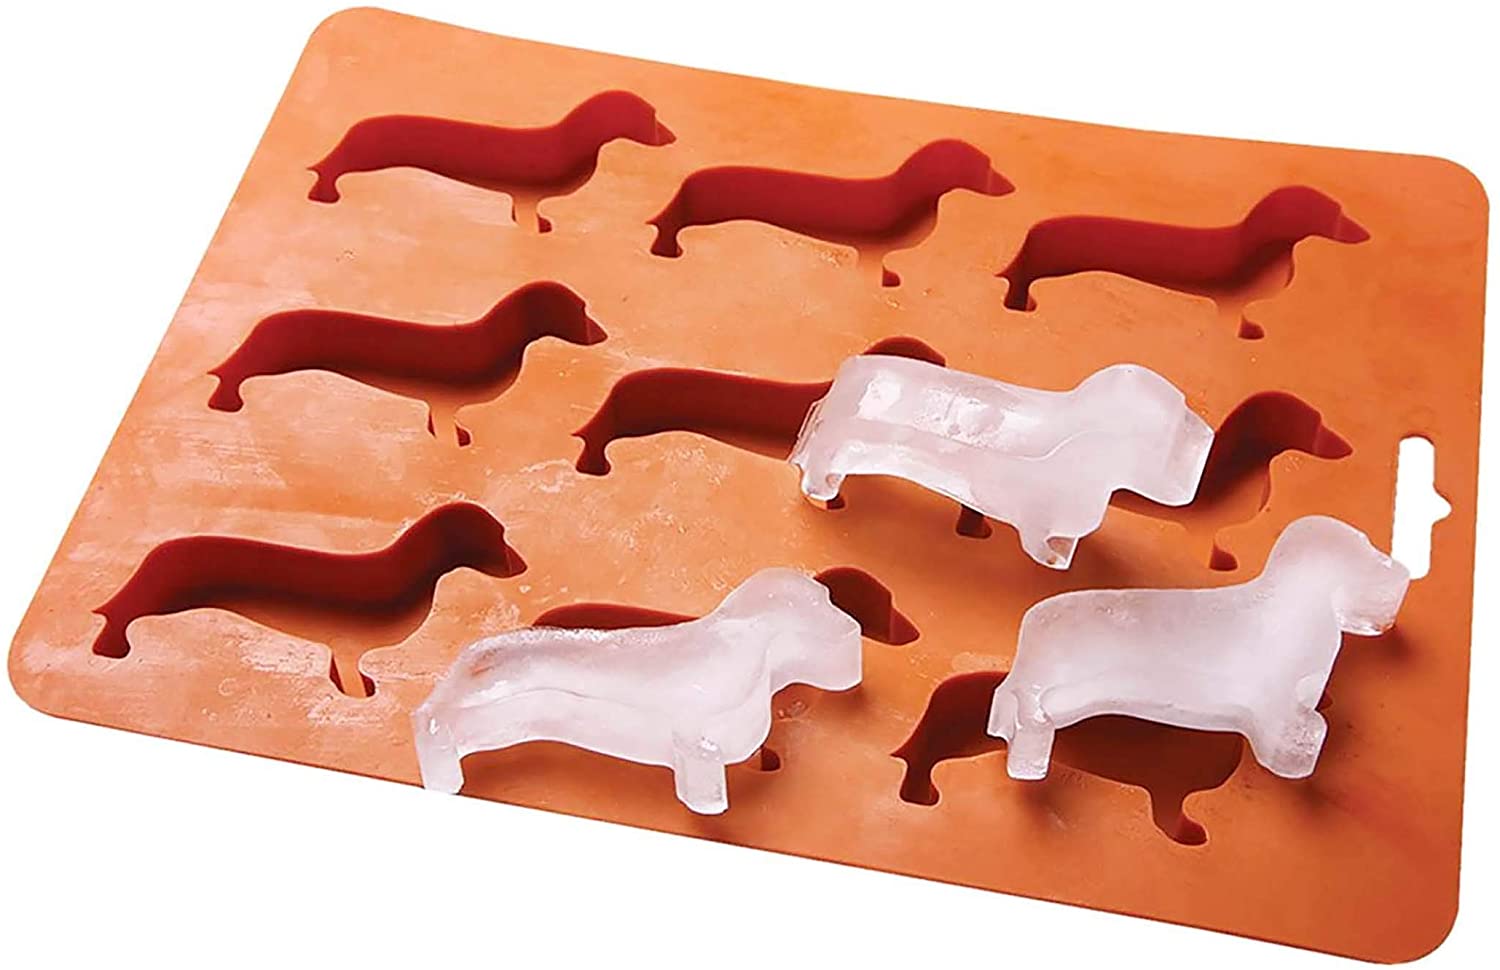 Dog-Shaped Silicone Ice Tray